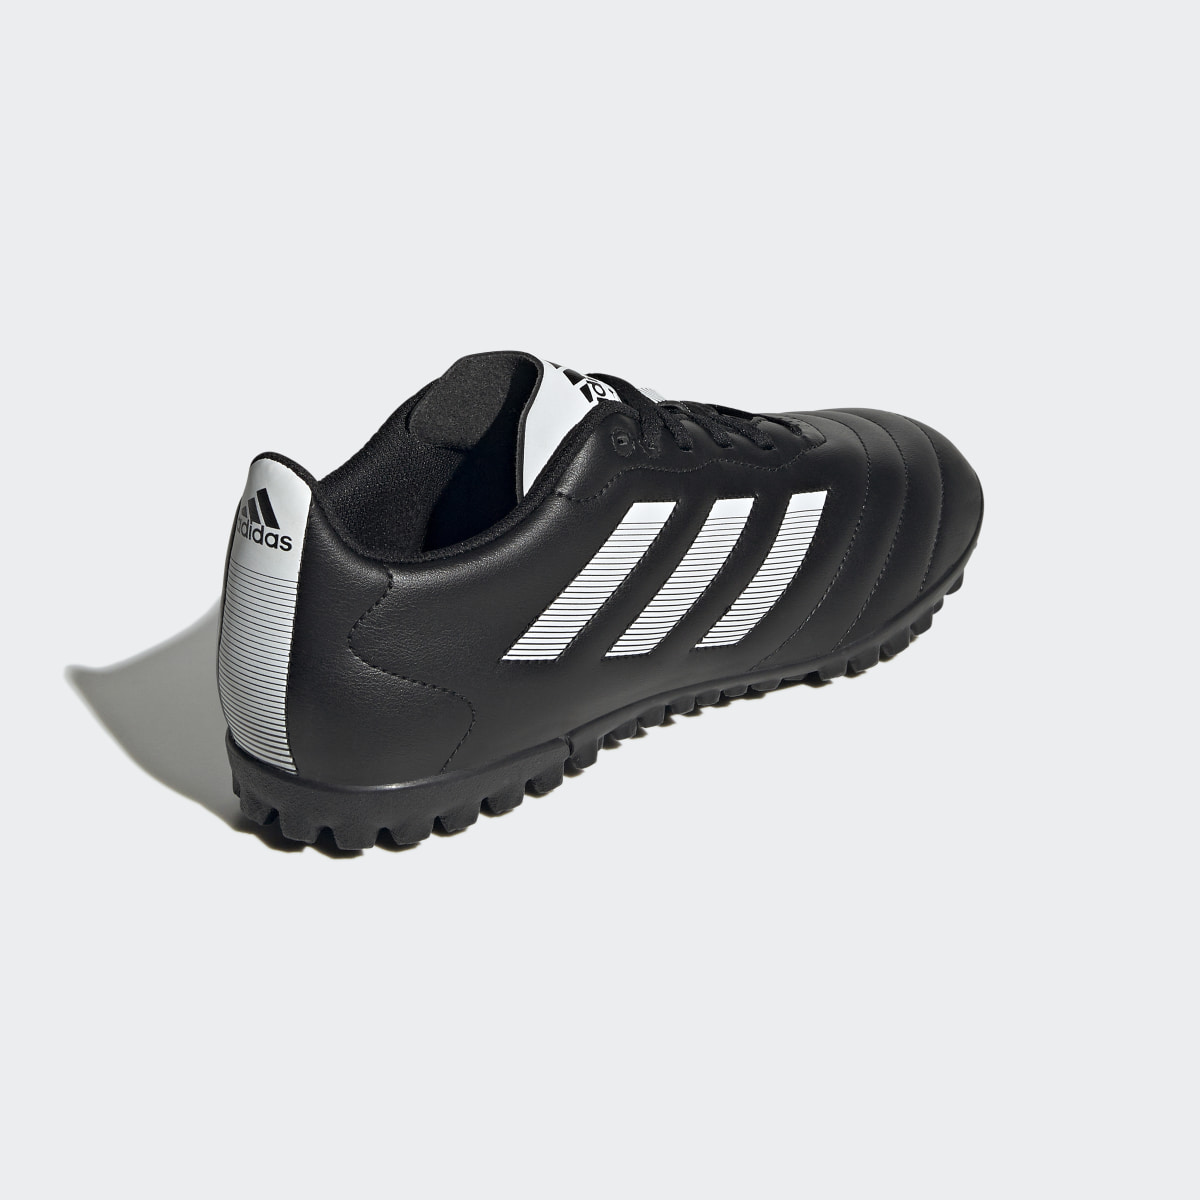 Adidas Botas de Futebol Goletto VIII – Piso sintético. 6